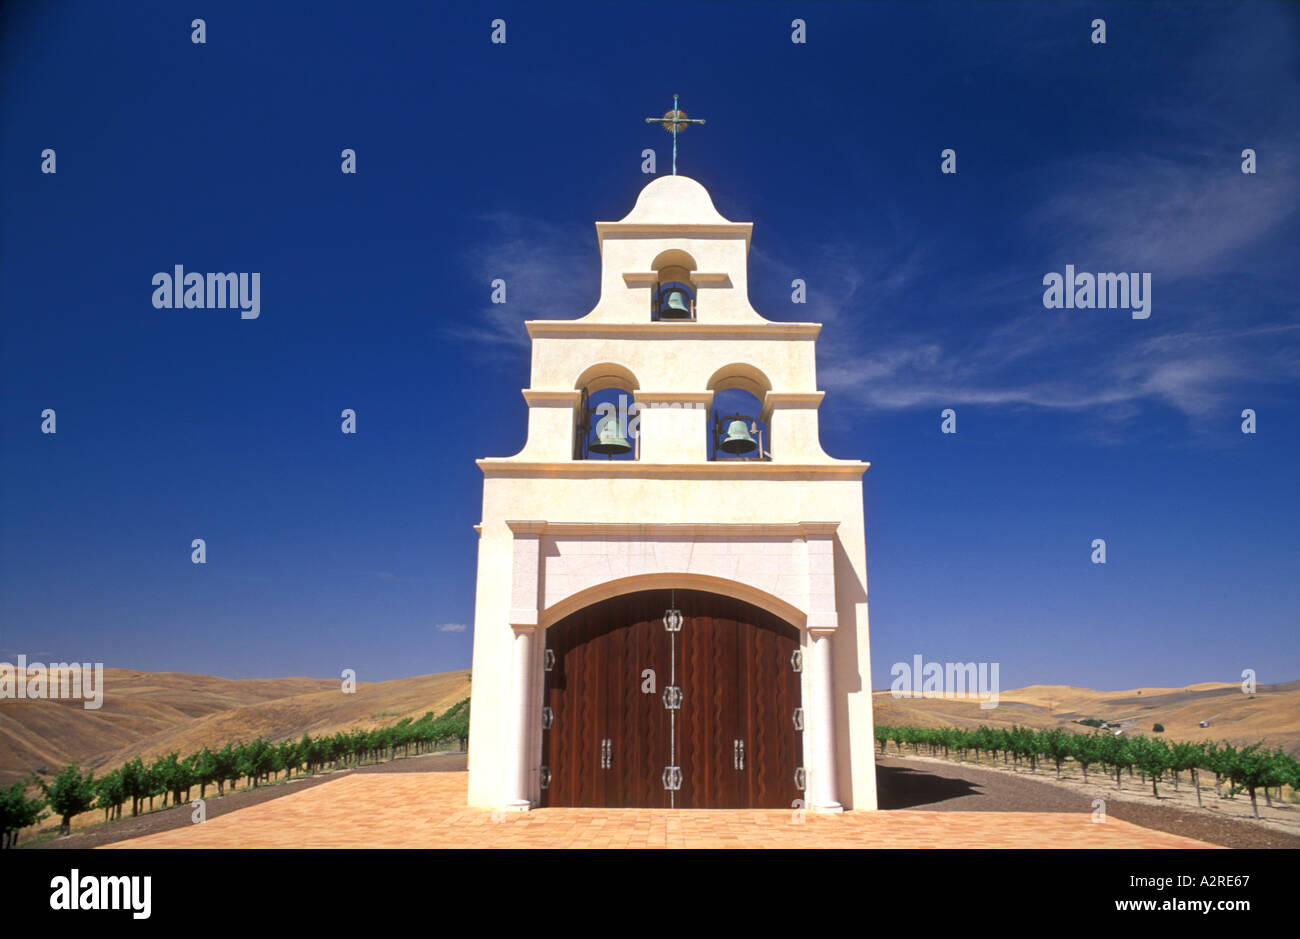 USA, California, Paso Robles, chiesa in stile missione spagnola sulla collina con vigneto d'uva Foto Stock